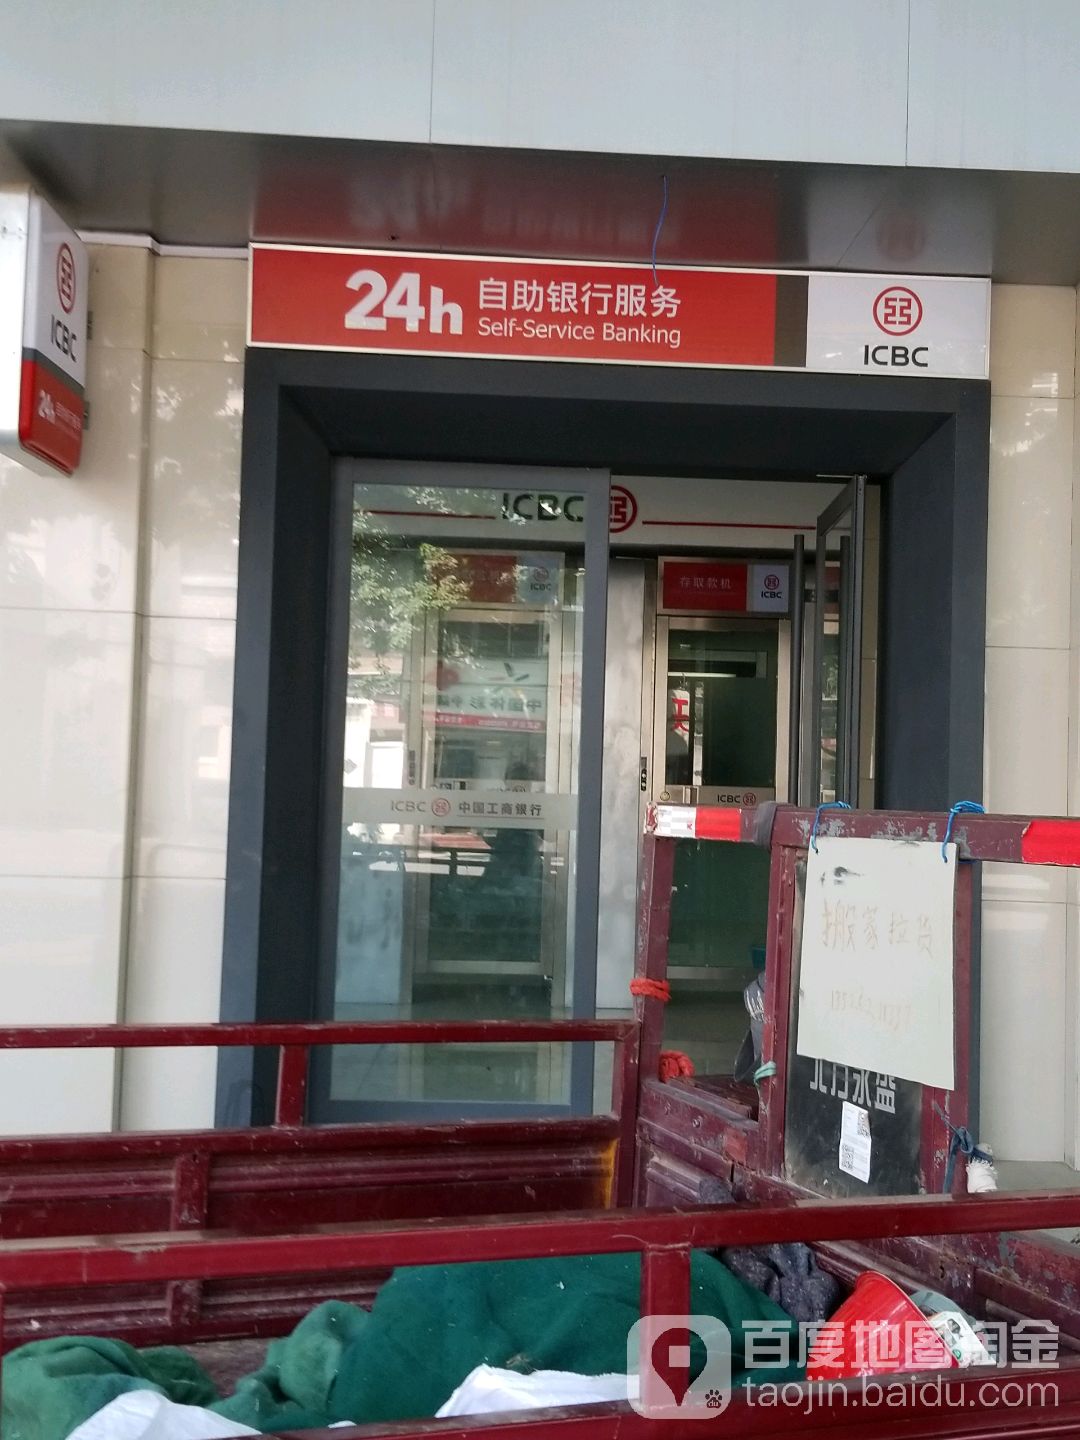 中國工商銀行24小時自助銀行